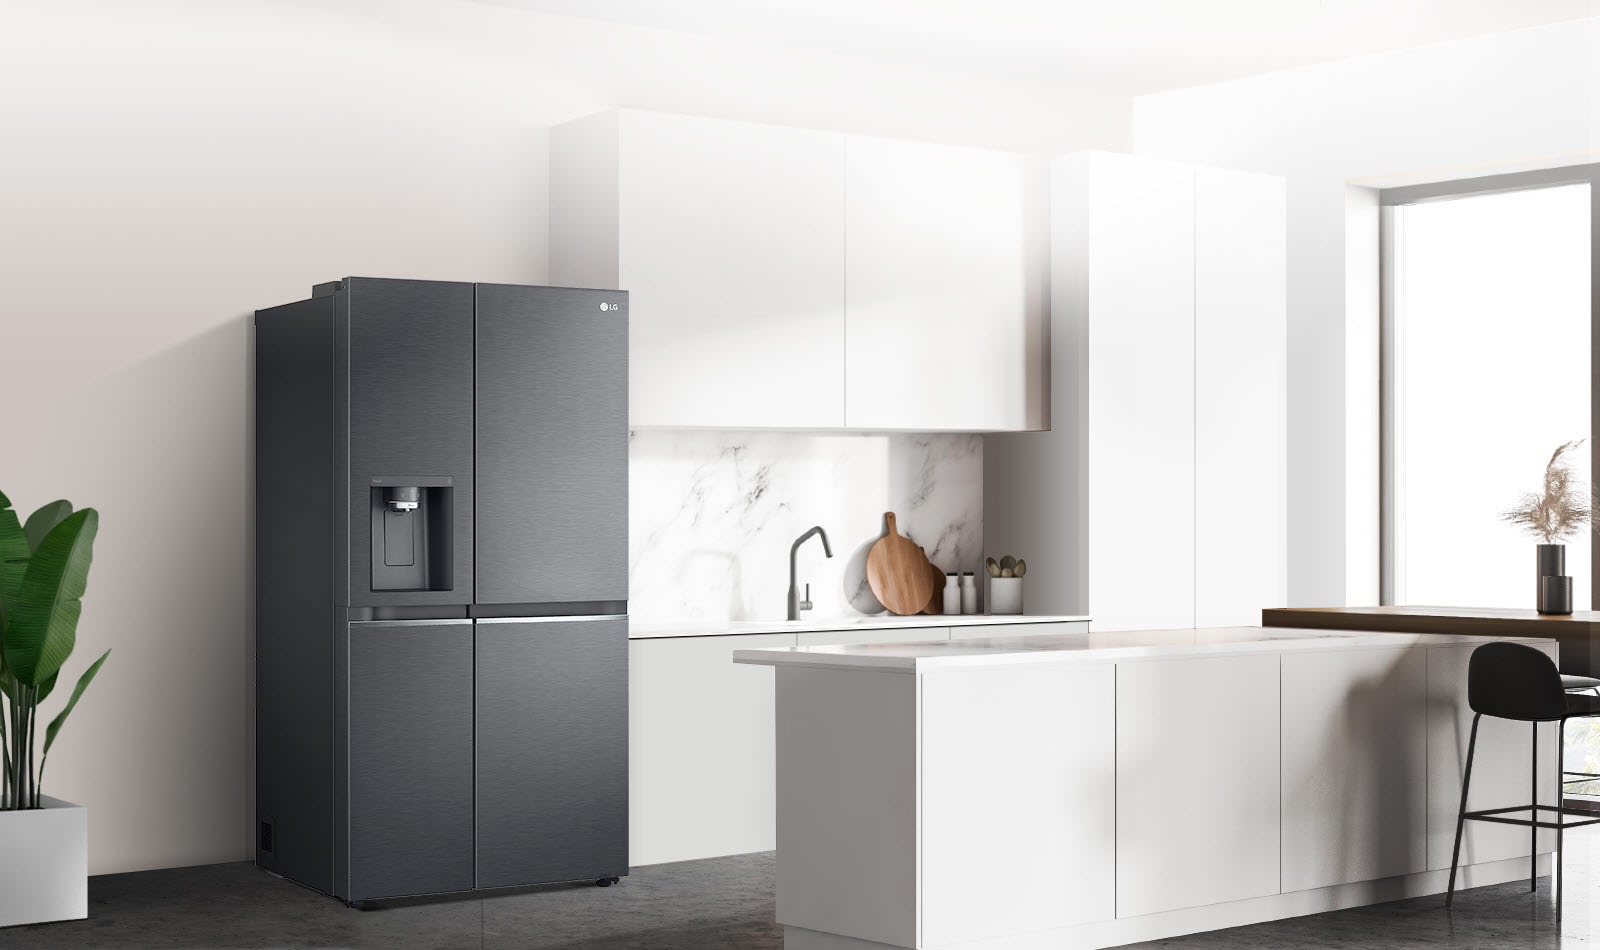 Virtuvės, kurioje pastatytas juodas „InstaView“ šaldytuvas, vaizdas iš šono.